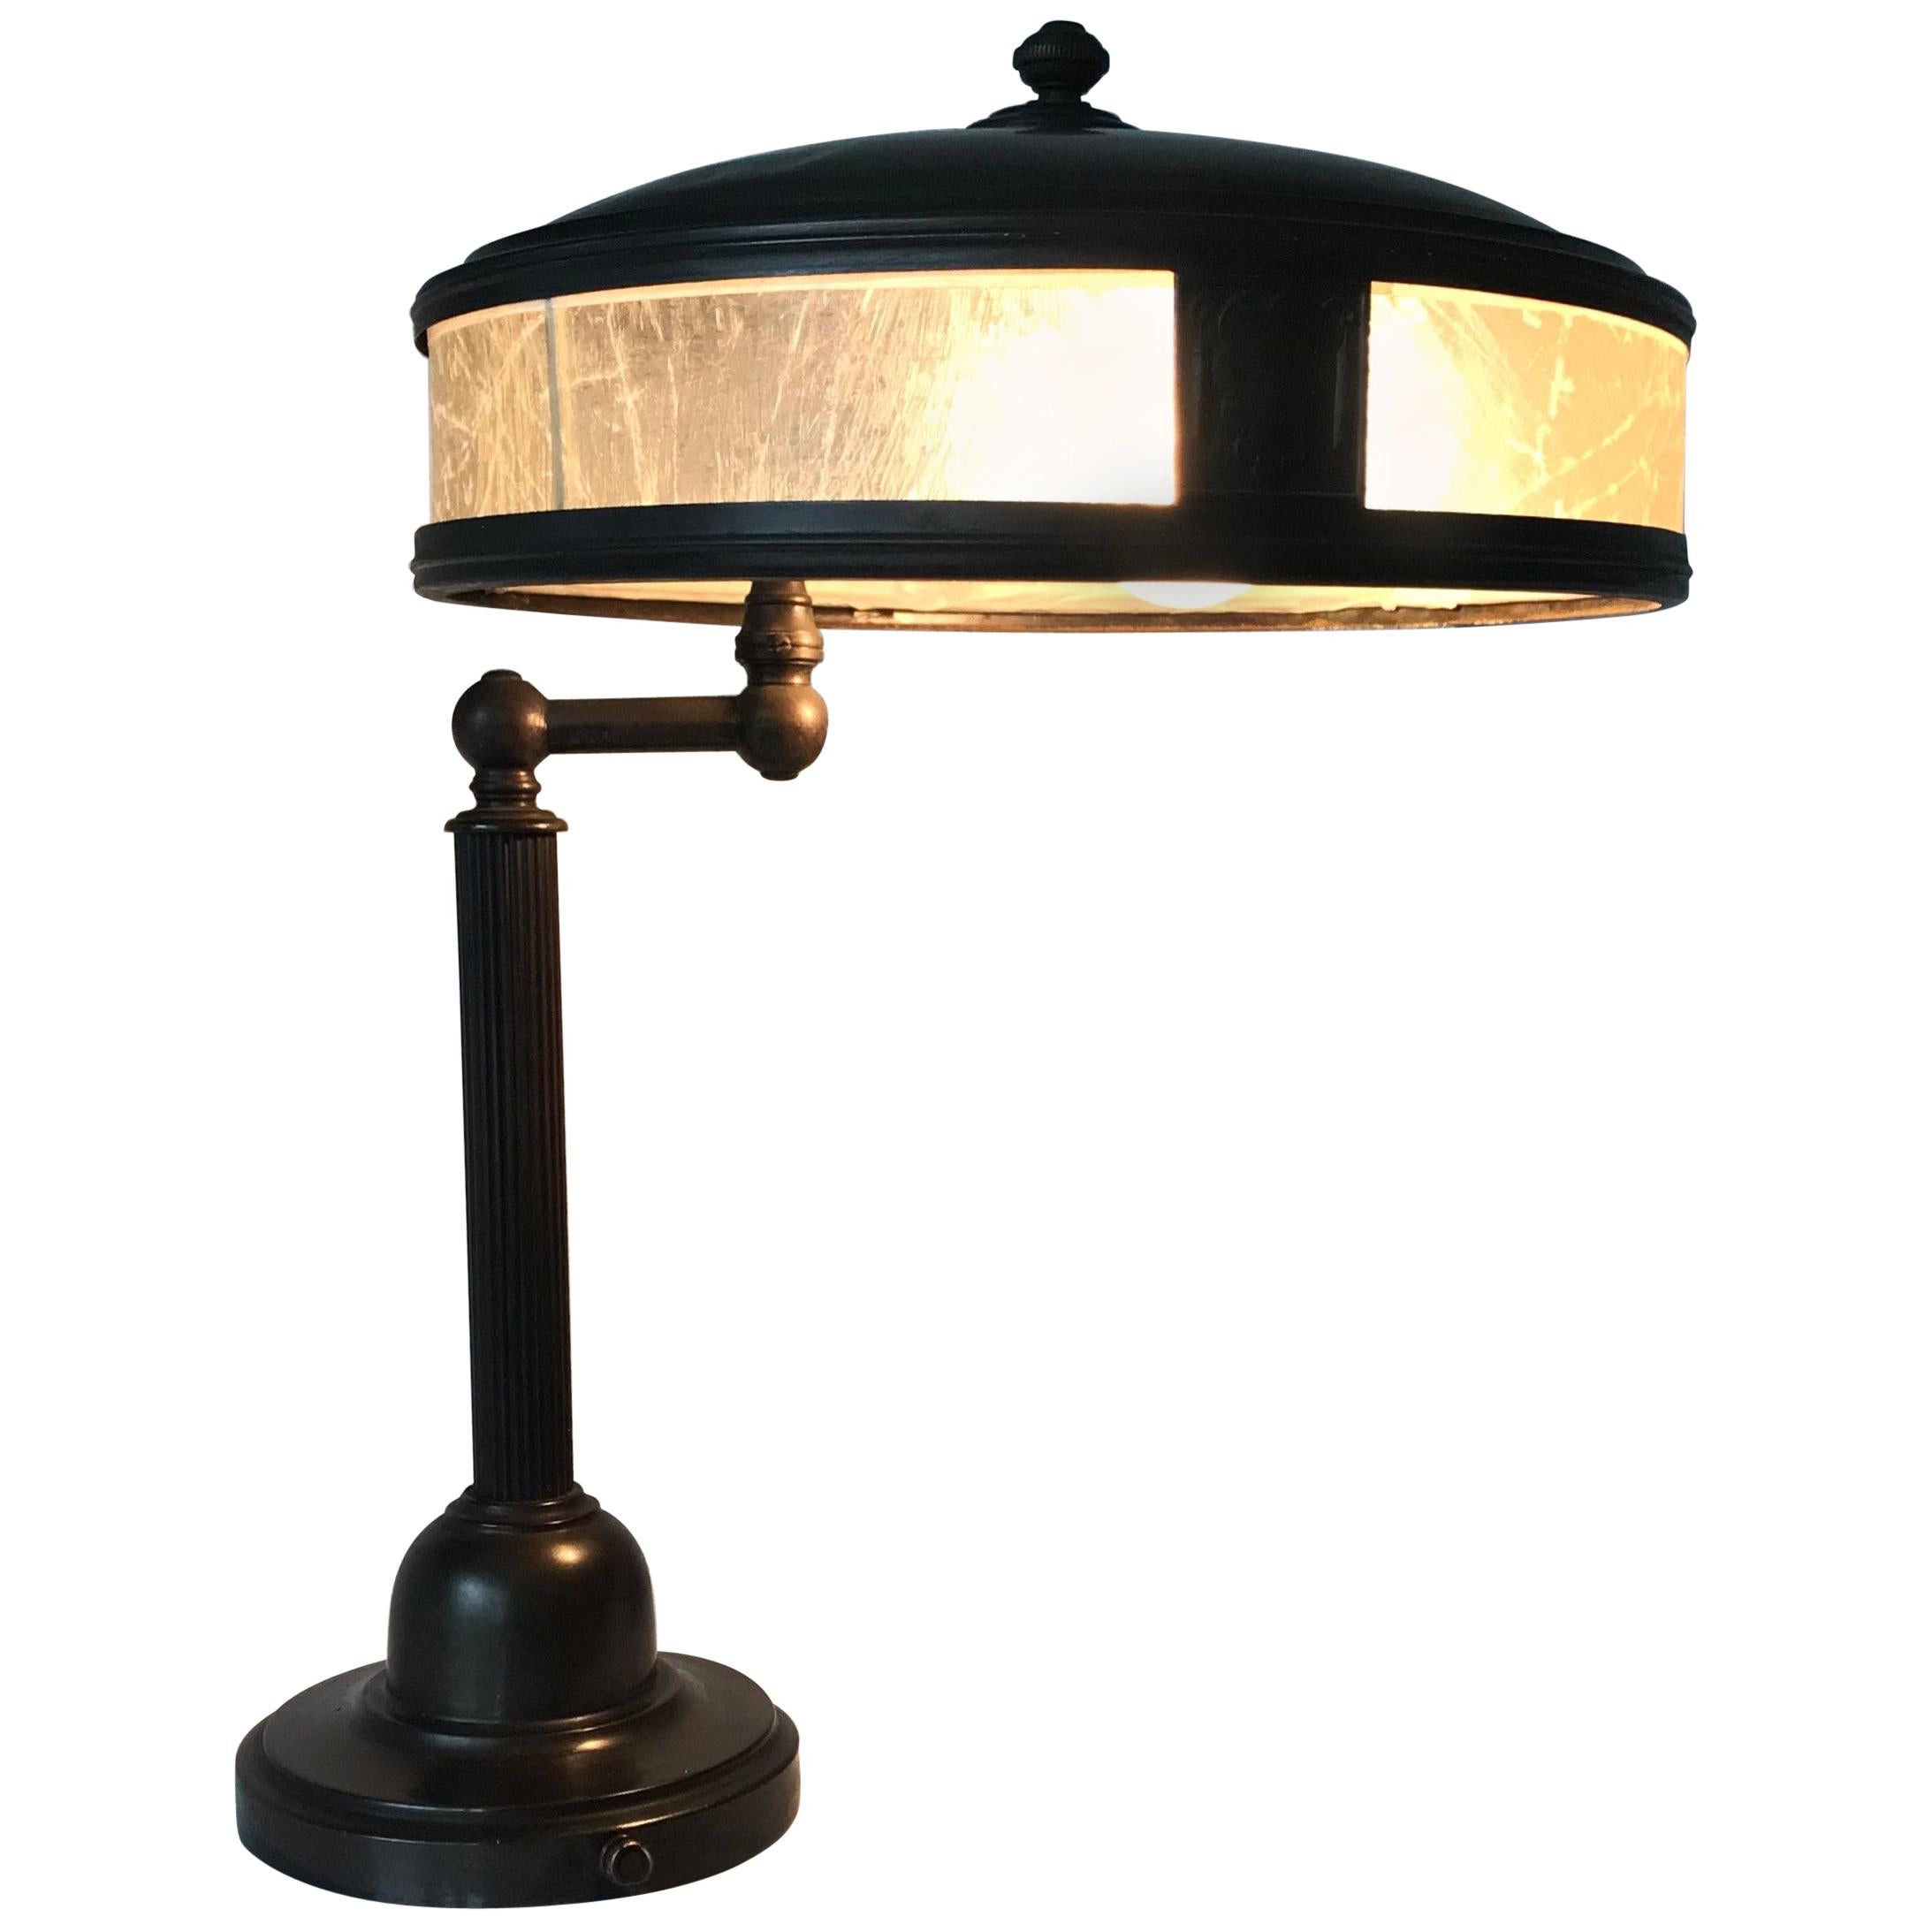 Jugendstil Era Arts & Crafts Patinated Brass Table or Desk Standard Lamp